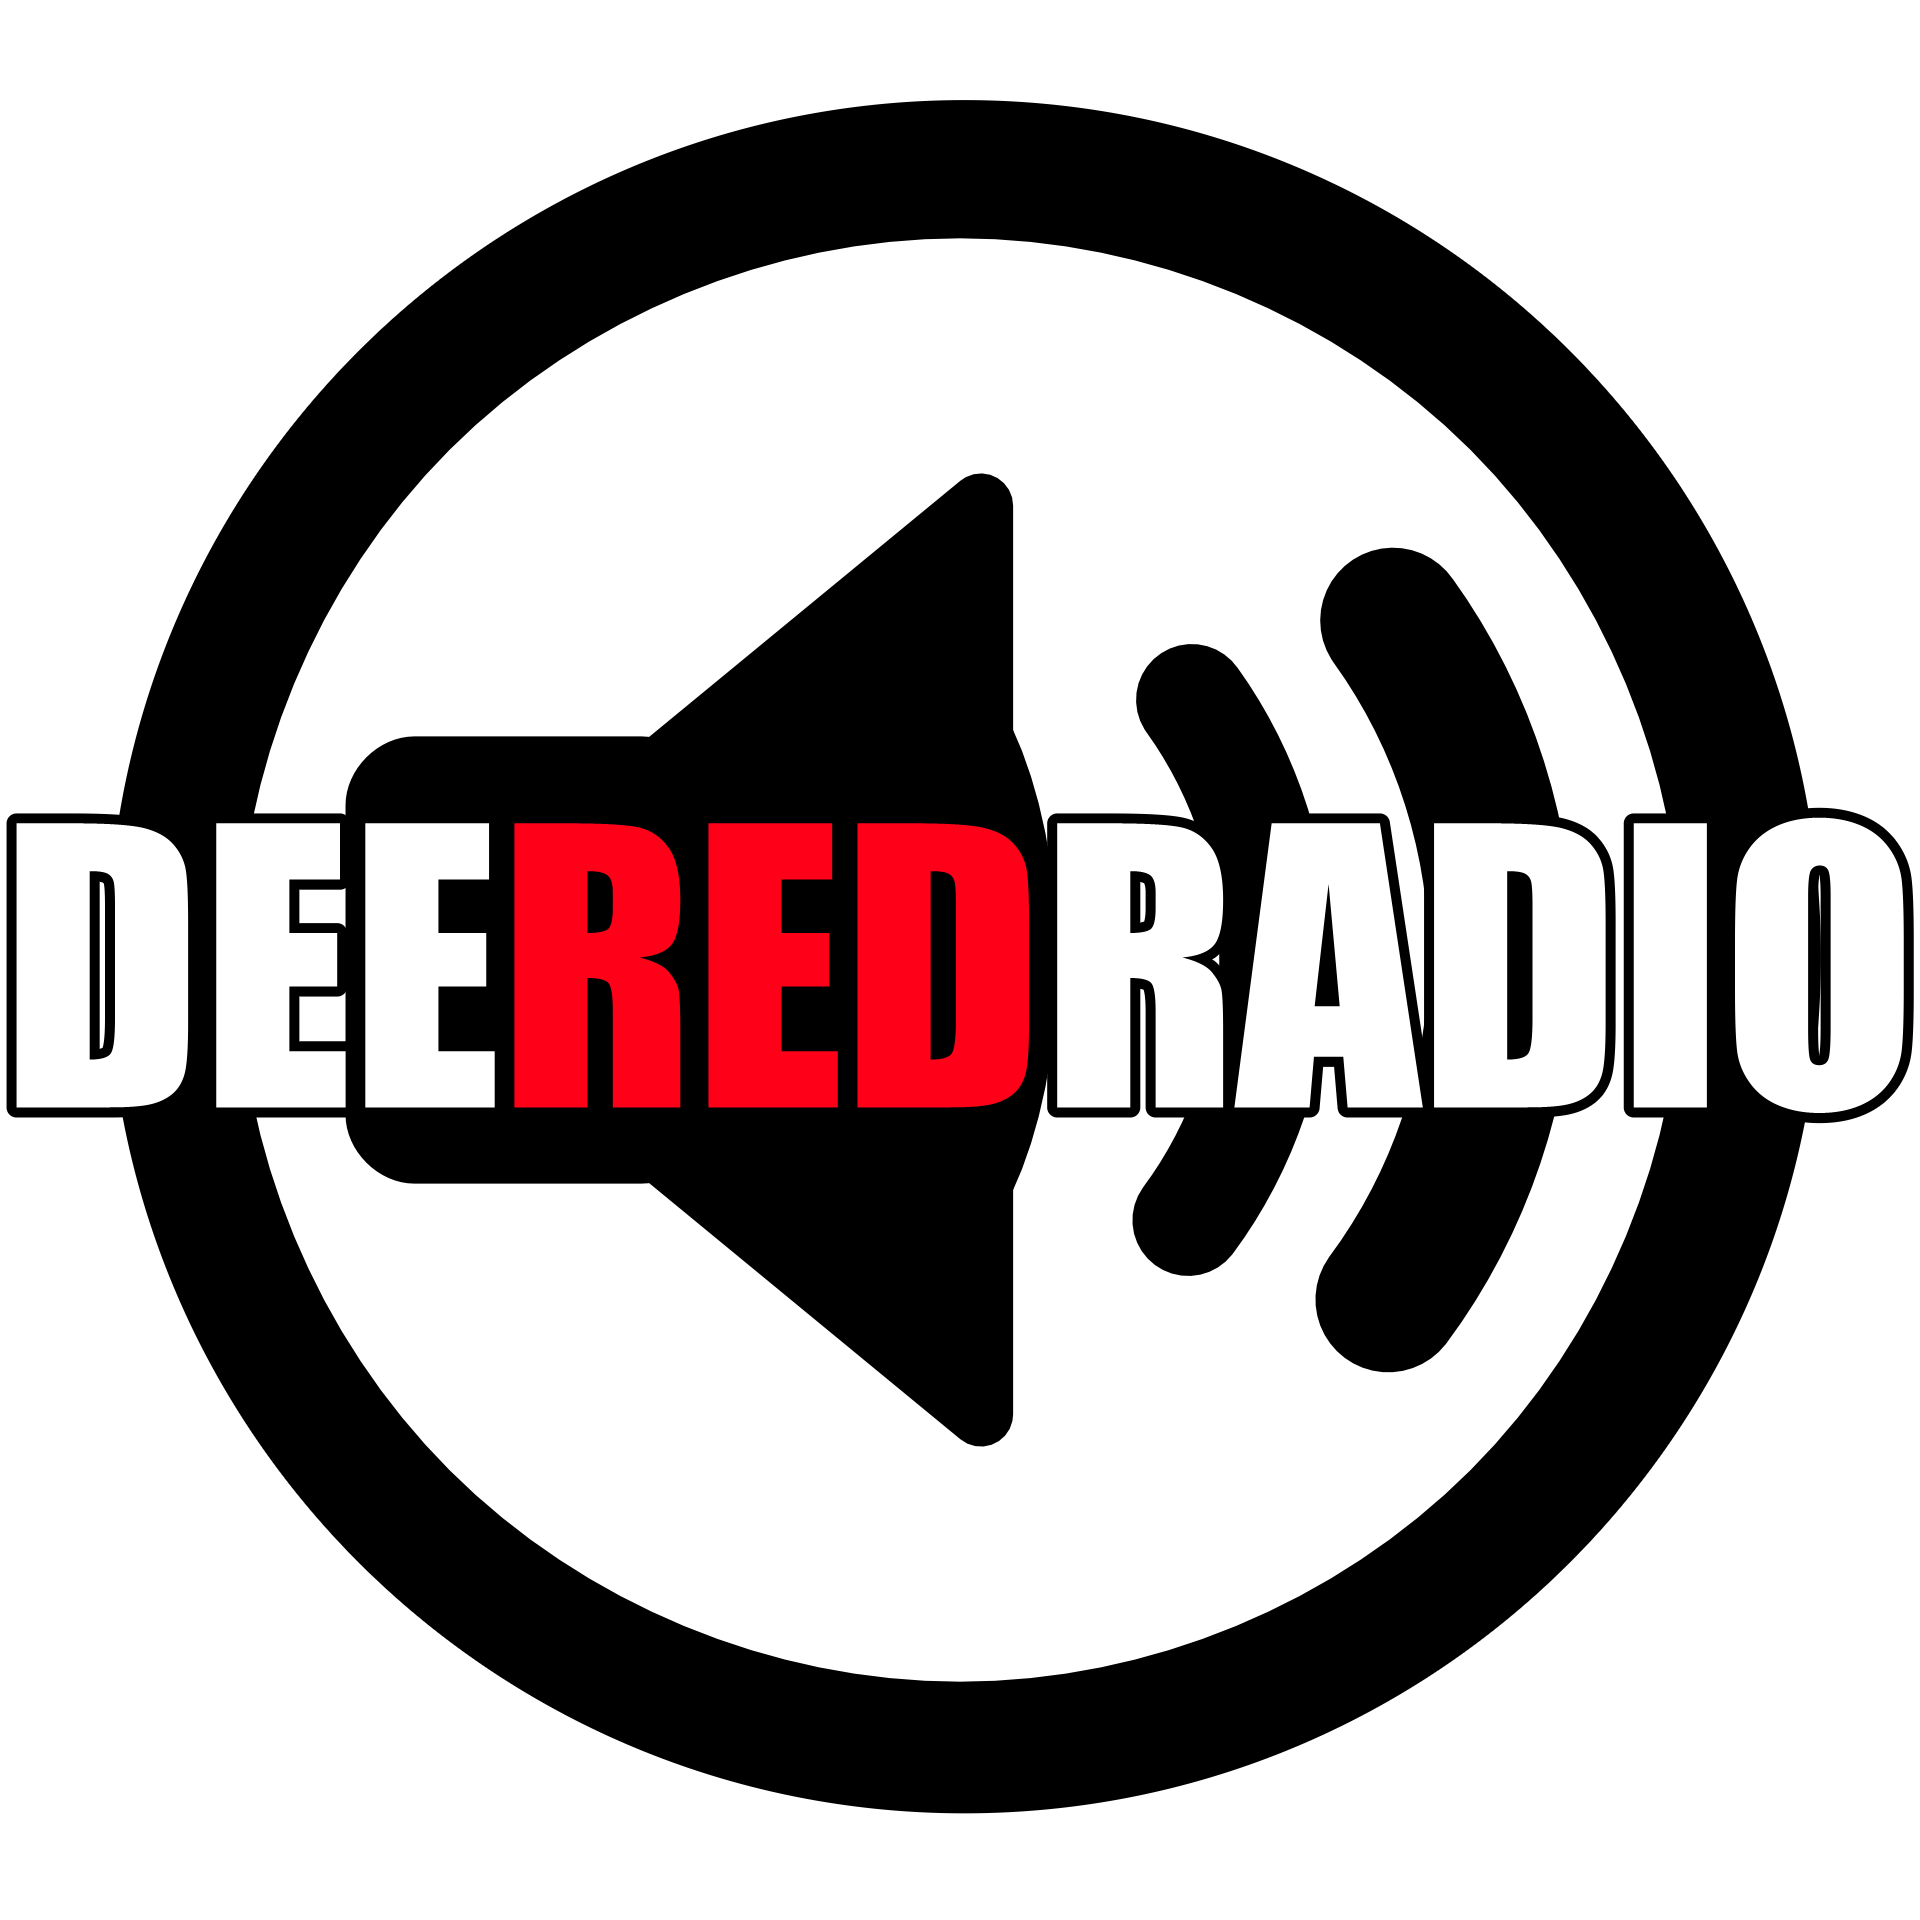 Radio.de | DEEREDRADIO